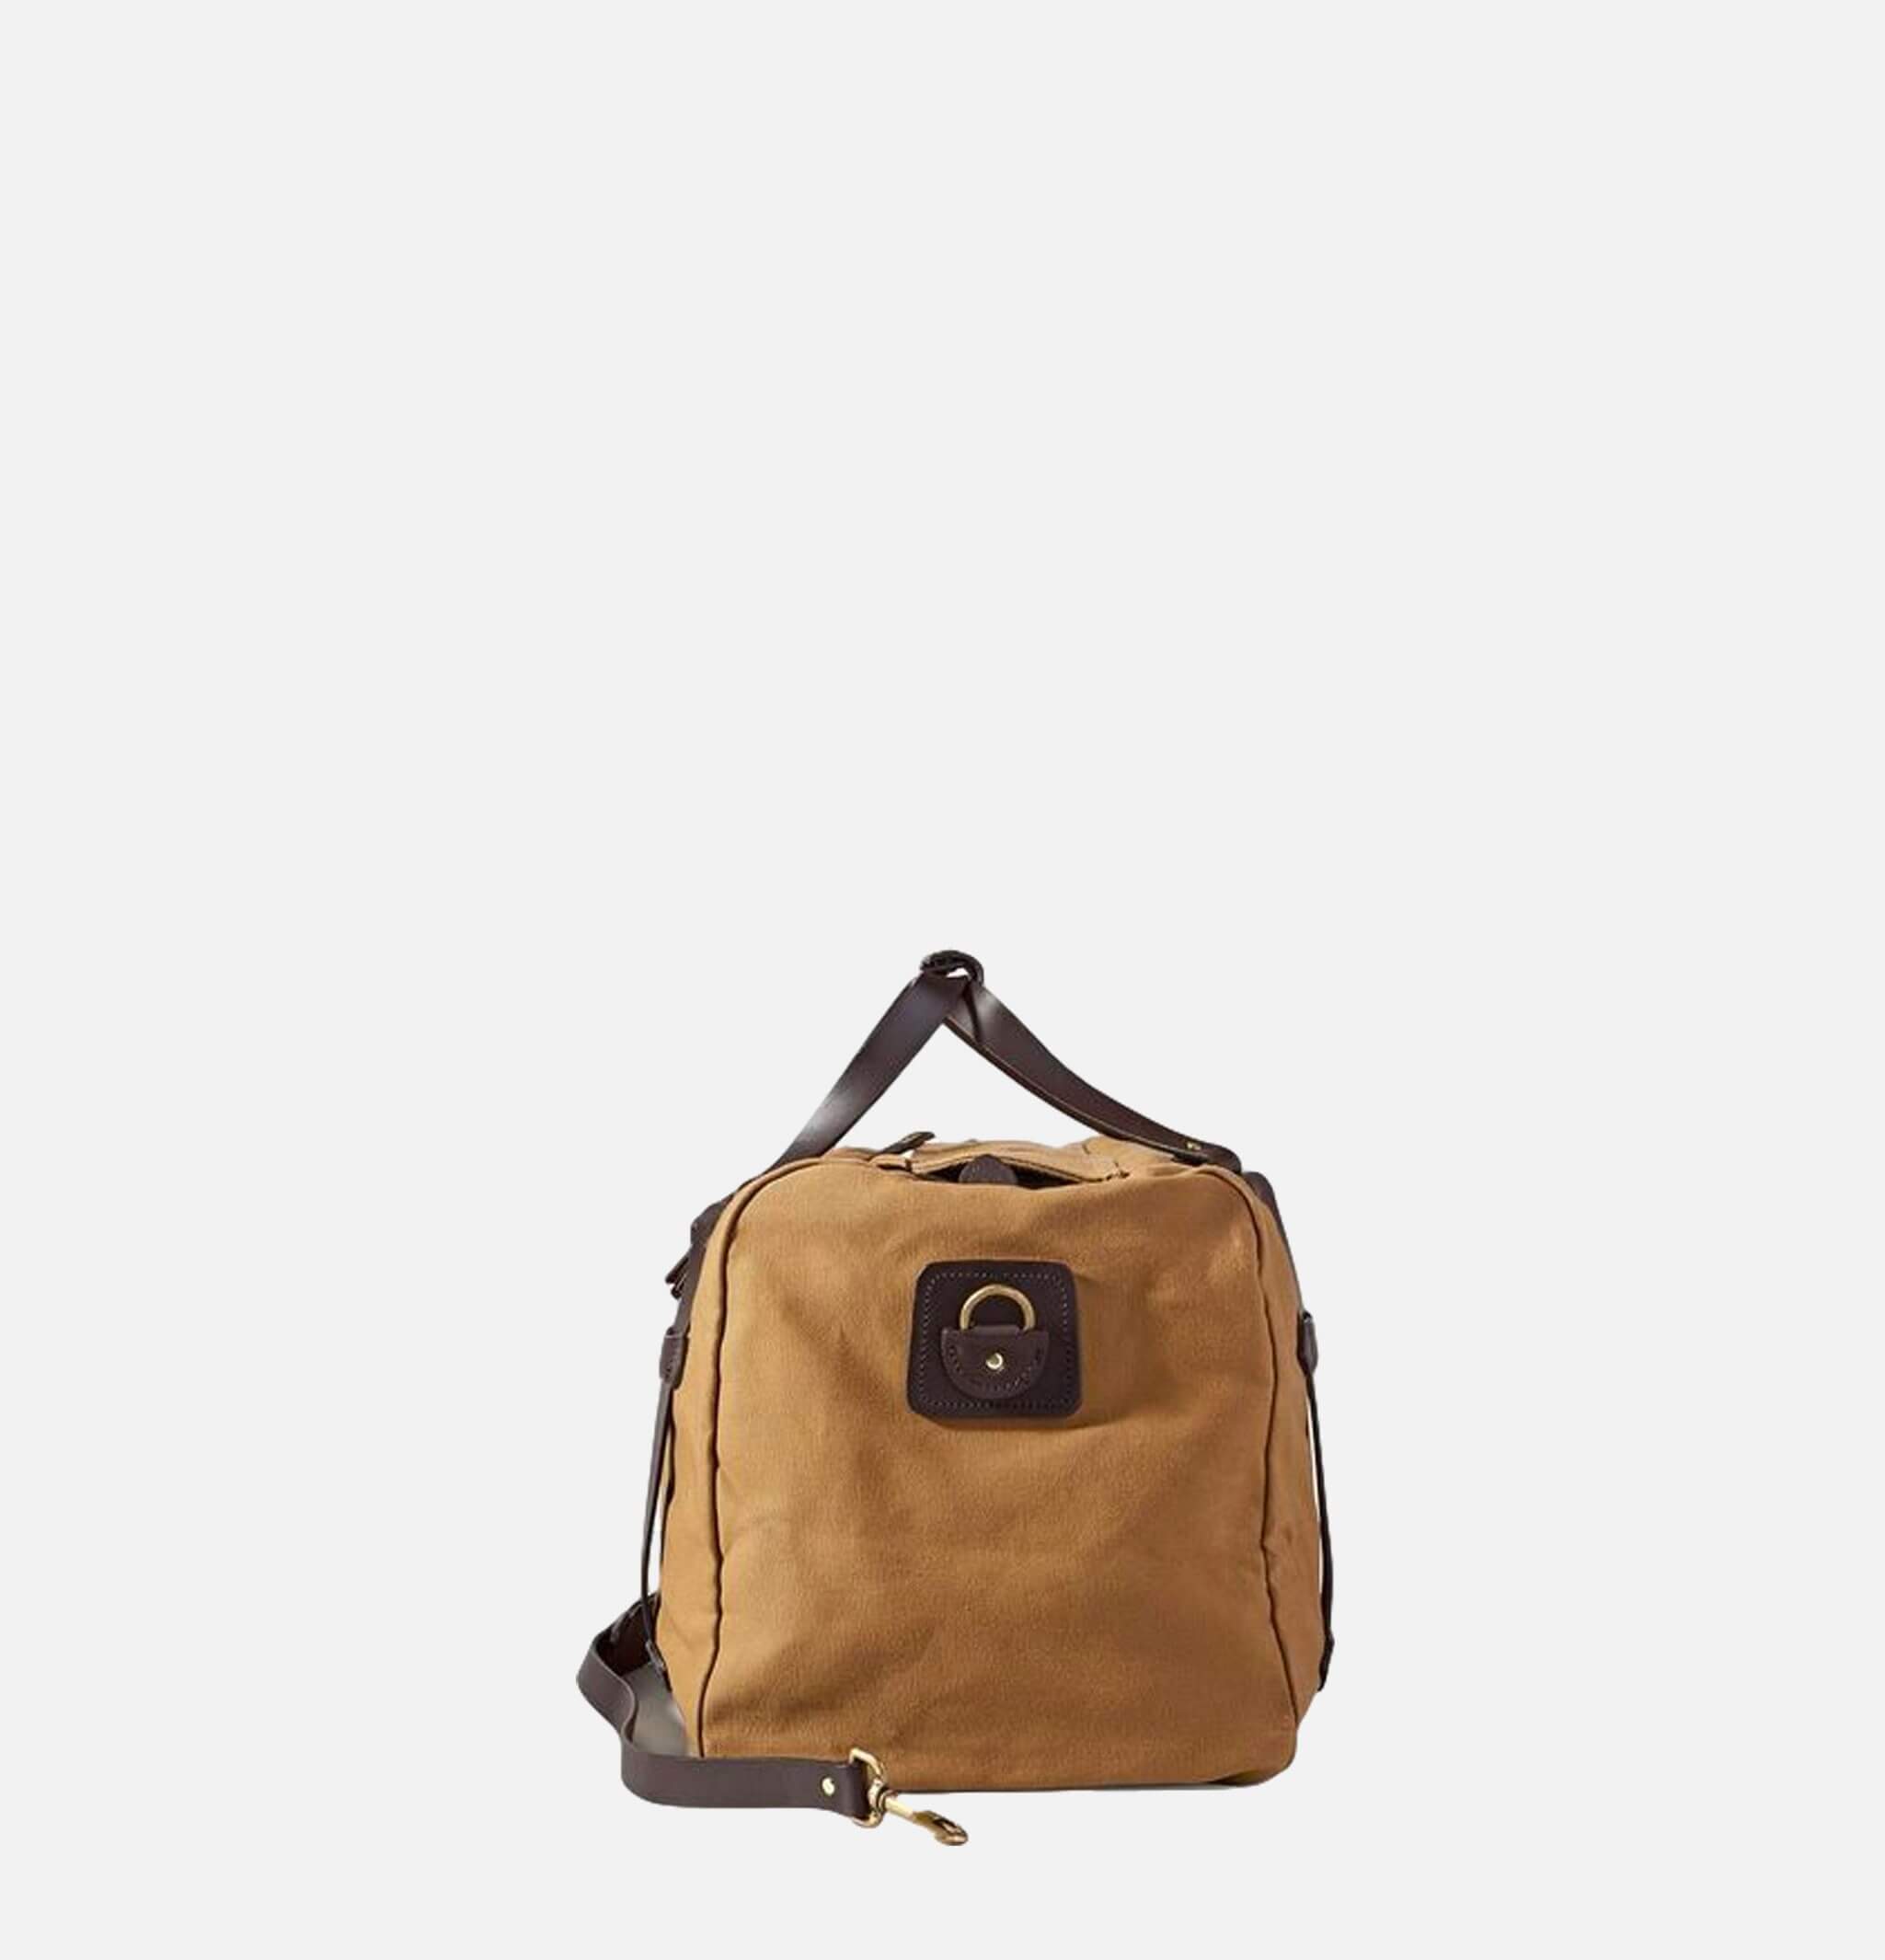 70325 - Medium Duffle Bag Tan